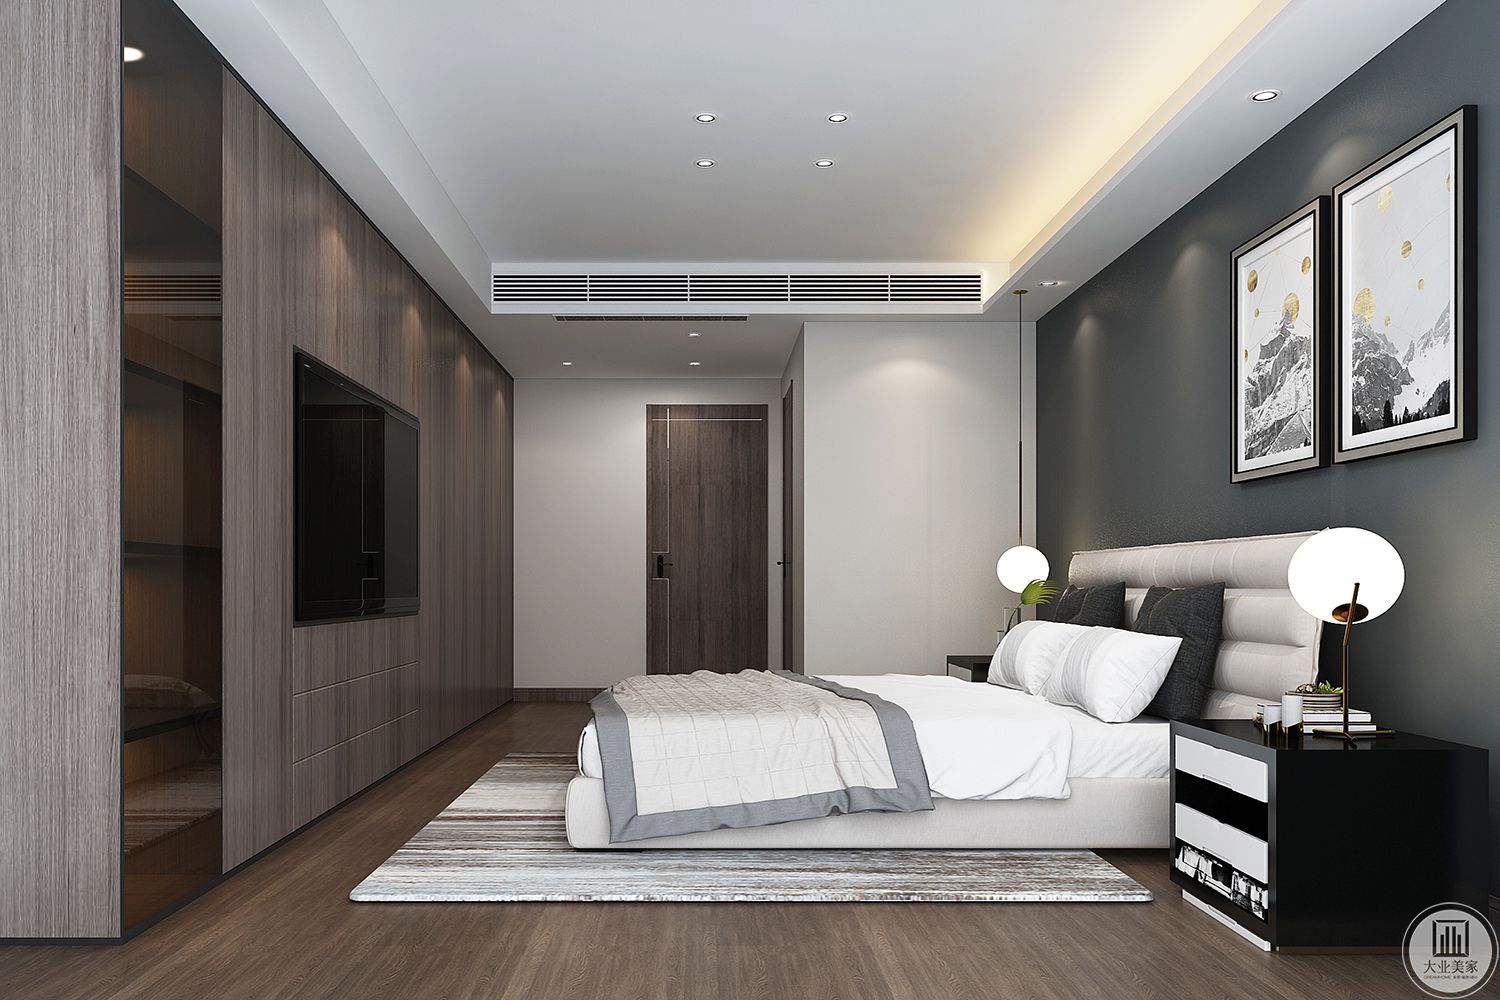 卧室空间功能与形式完美统一  简洁明快 尚而不浮躁 雅独特